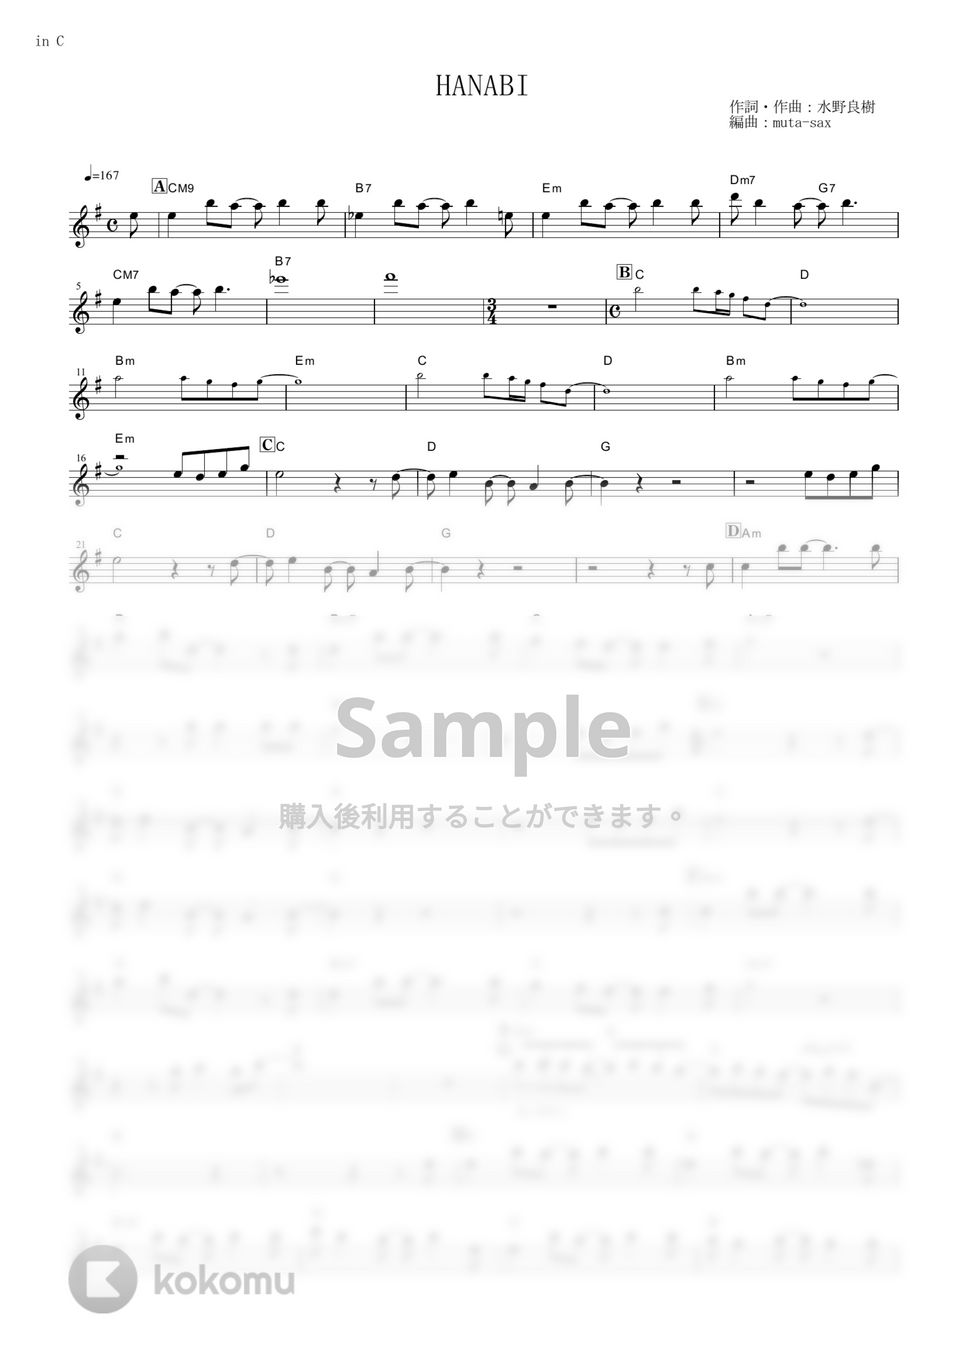 いきものがかり - HANABI (『BLEACH』 / in C) by muta-sax